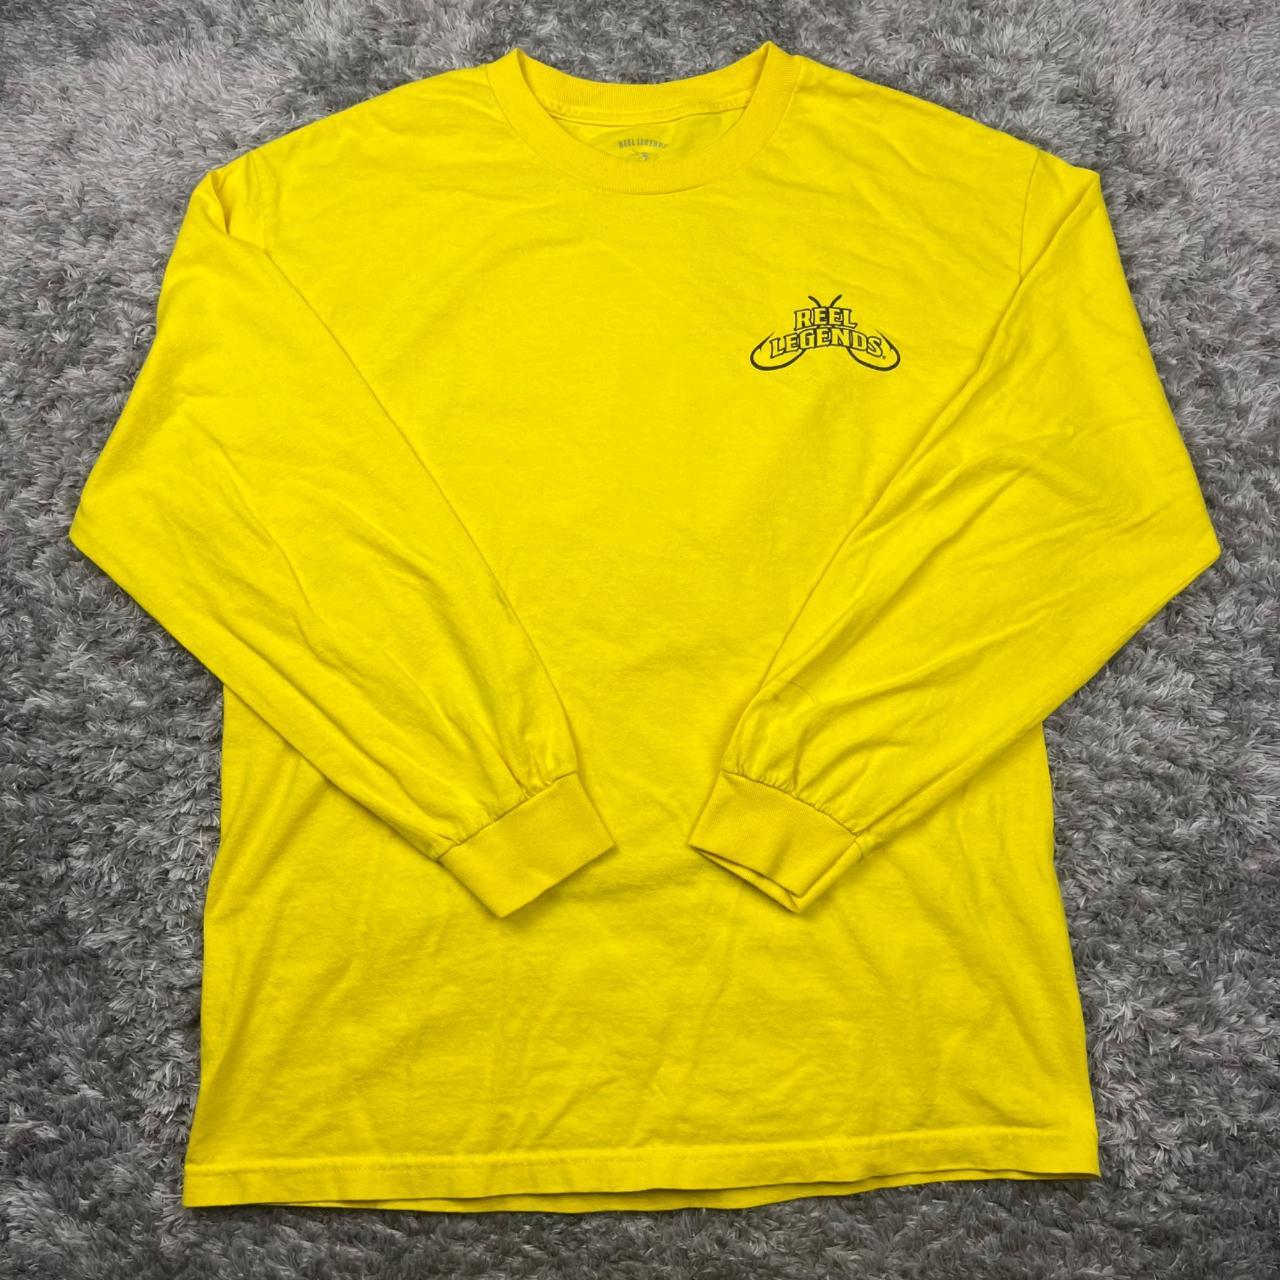 Reel Legends Shirt Men Large Yellow Graphic Bass - Depop